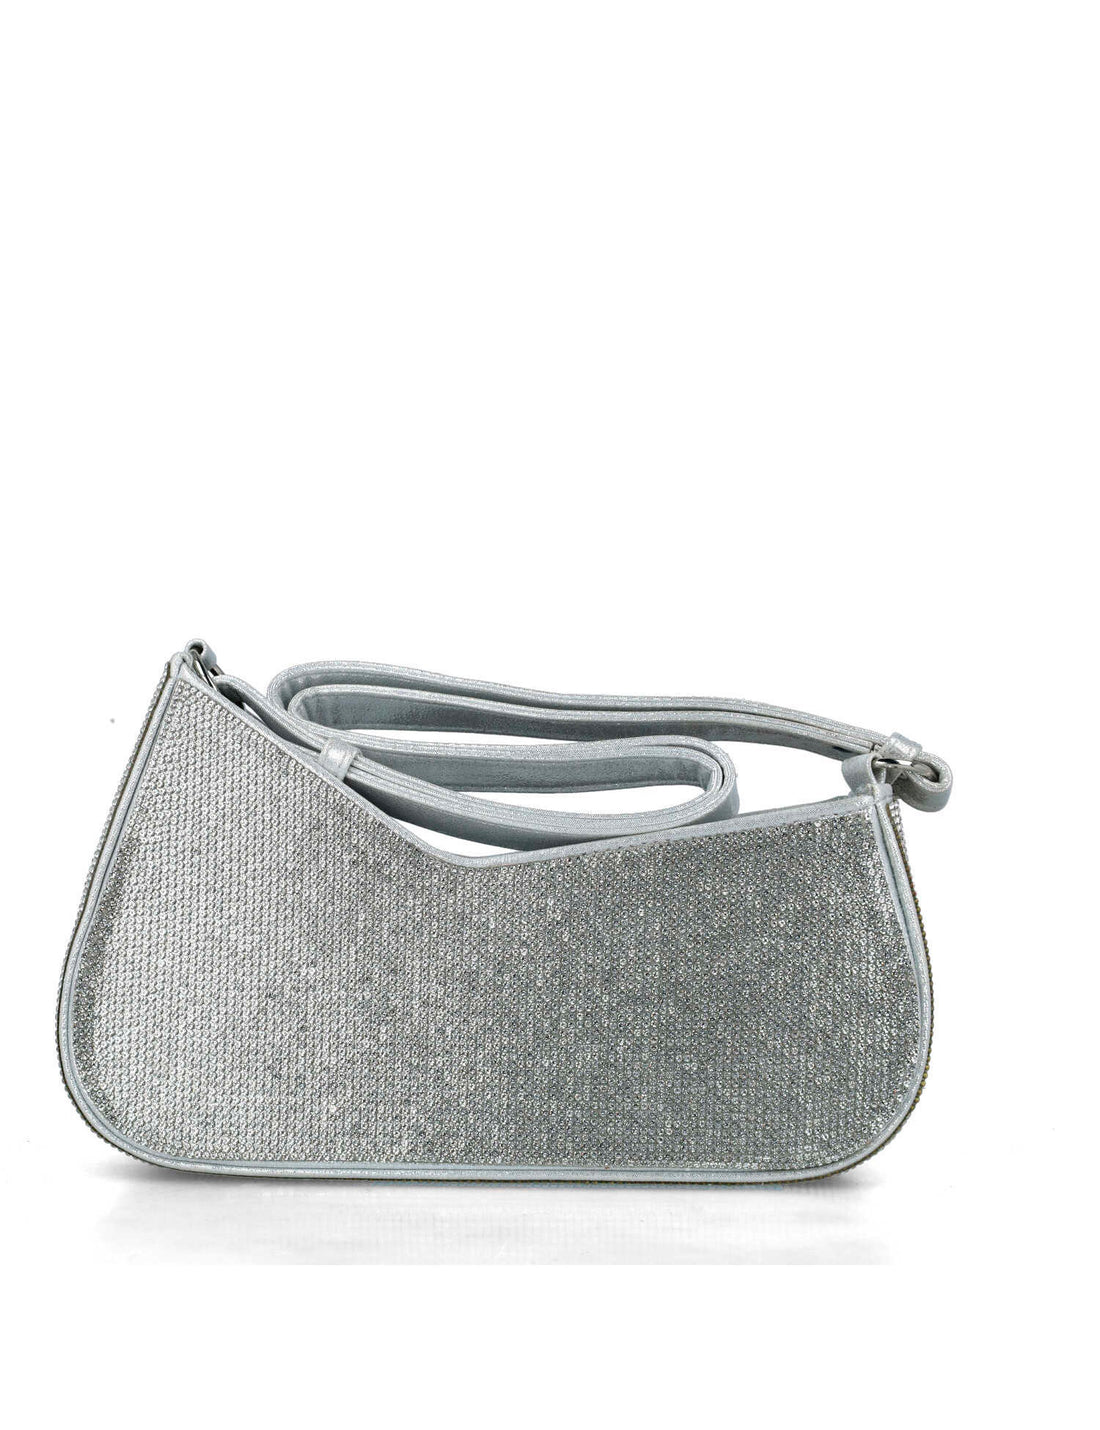 Siver Handbag With Embellishment_85680_09_01